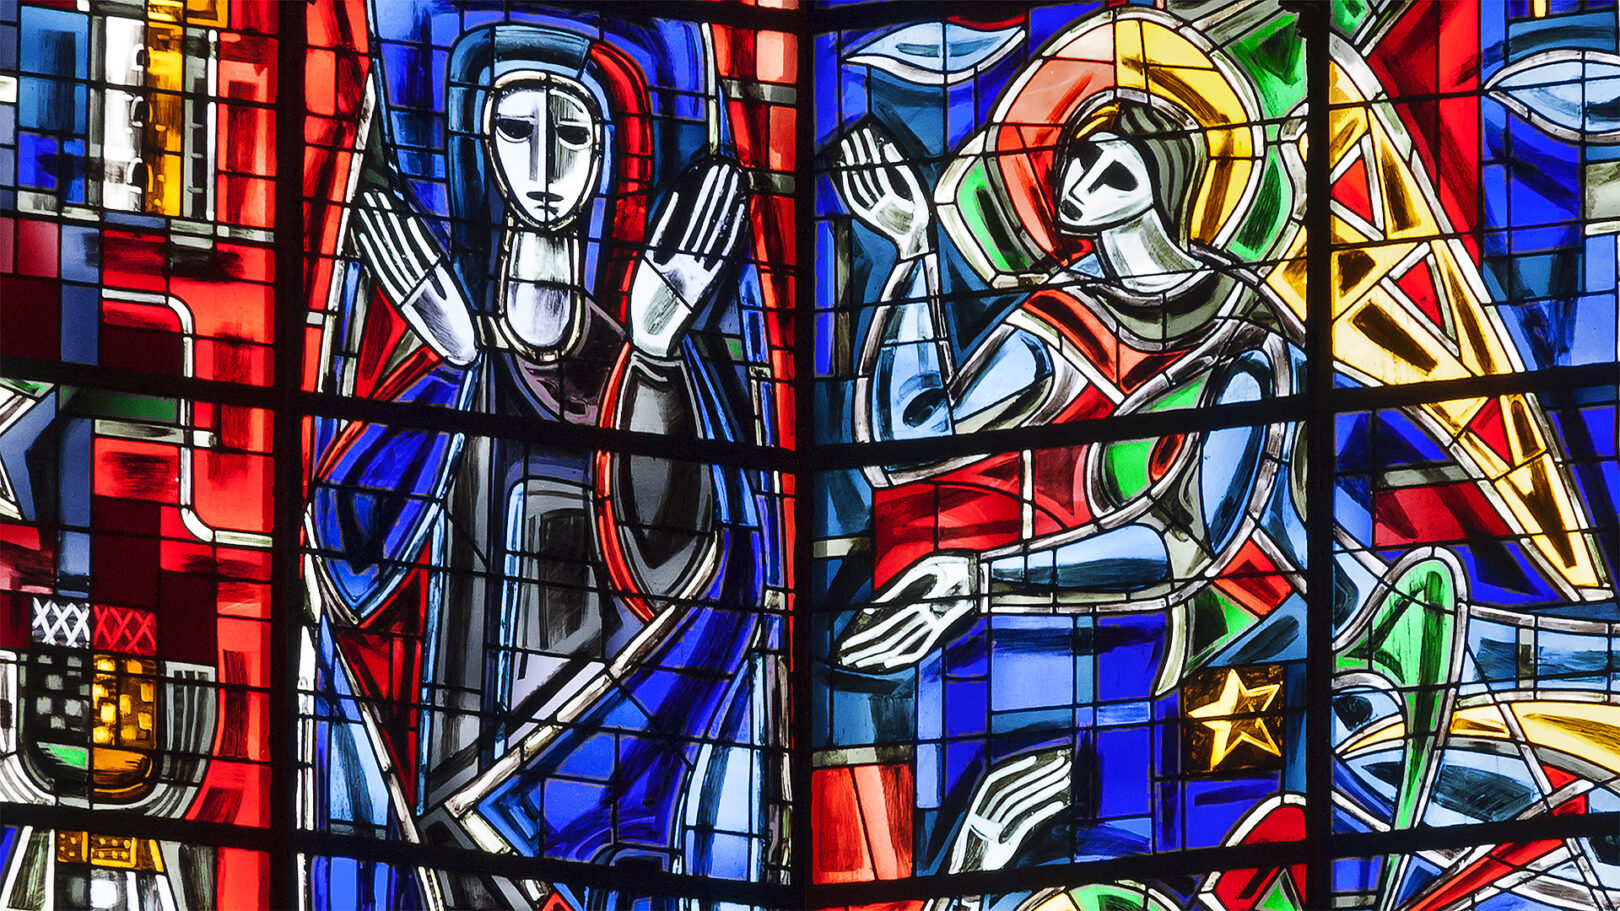 Liebfrauenkirche zu Trier, Ausschnitt aus den Kirchenfenstern: Maria und der Erzengel Gabriel.